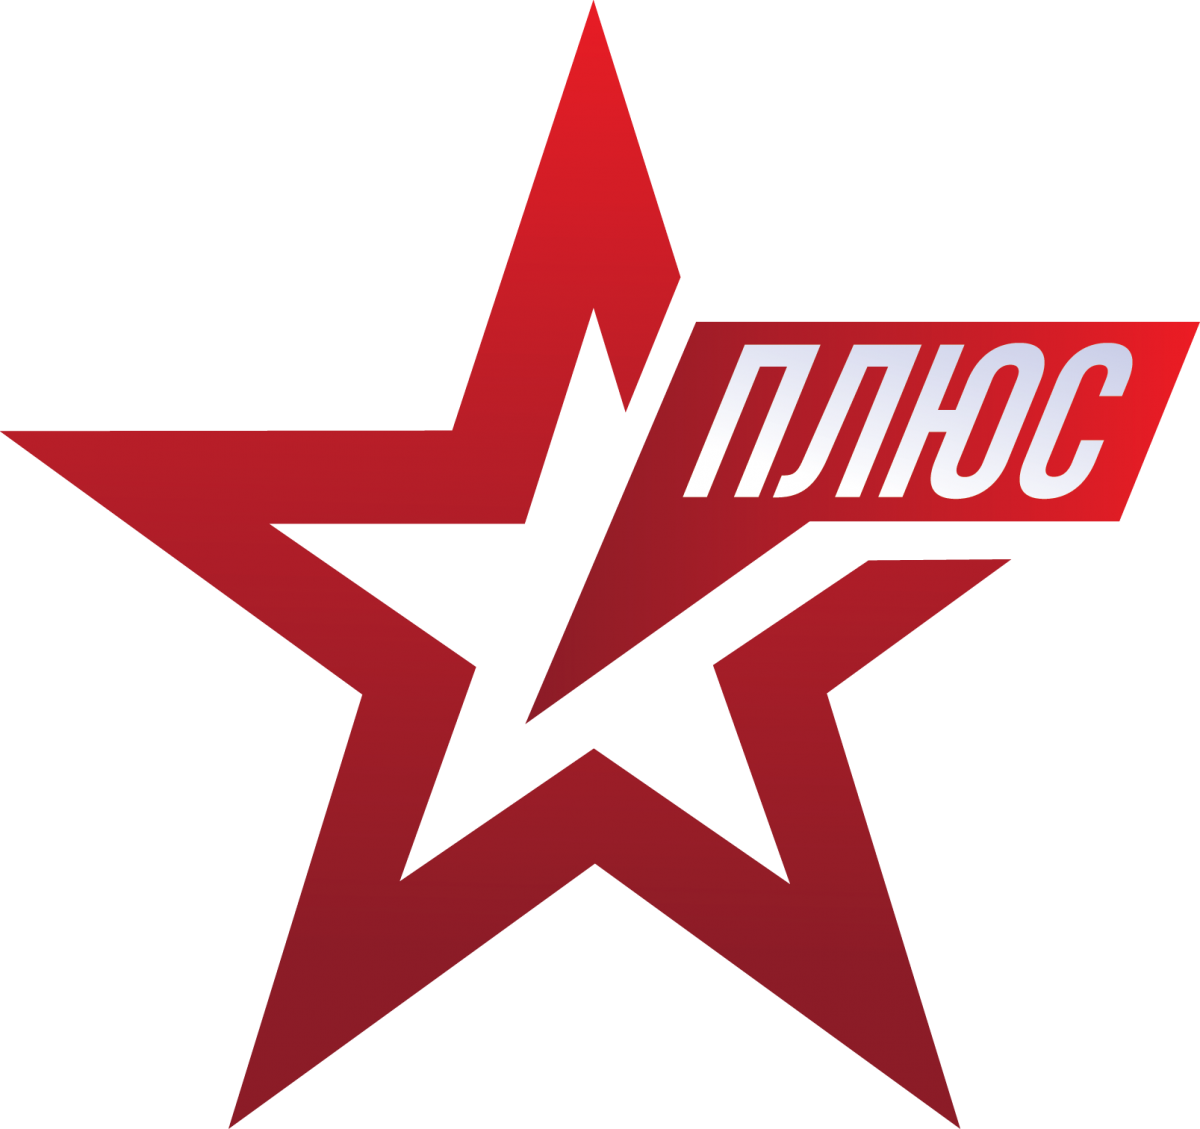 Логотип канала звезда. Телеканал звезда logo. Логотип телеканала Звязда. Канал звезда плюс.